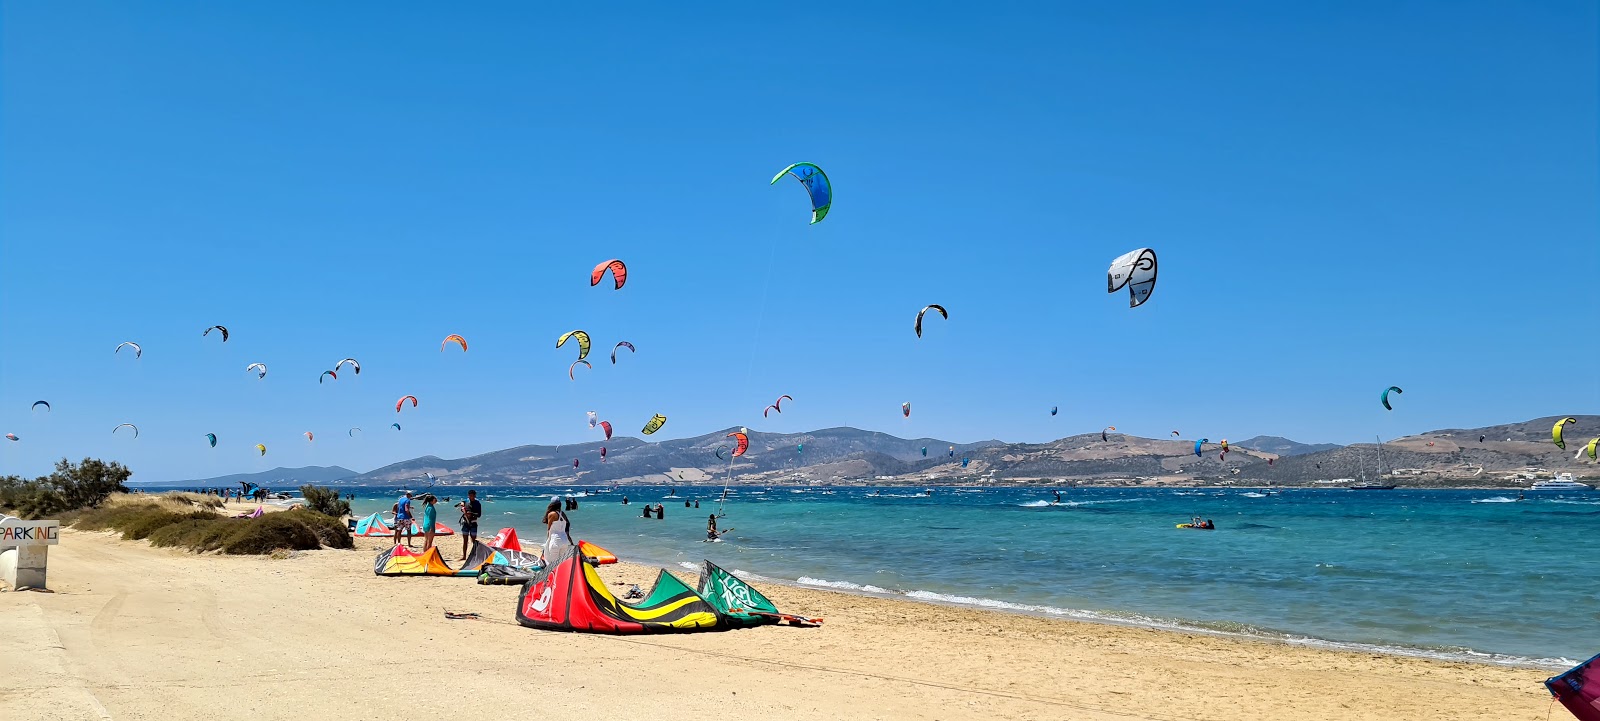 Photo of Paros Kite beach with spacious shore